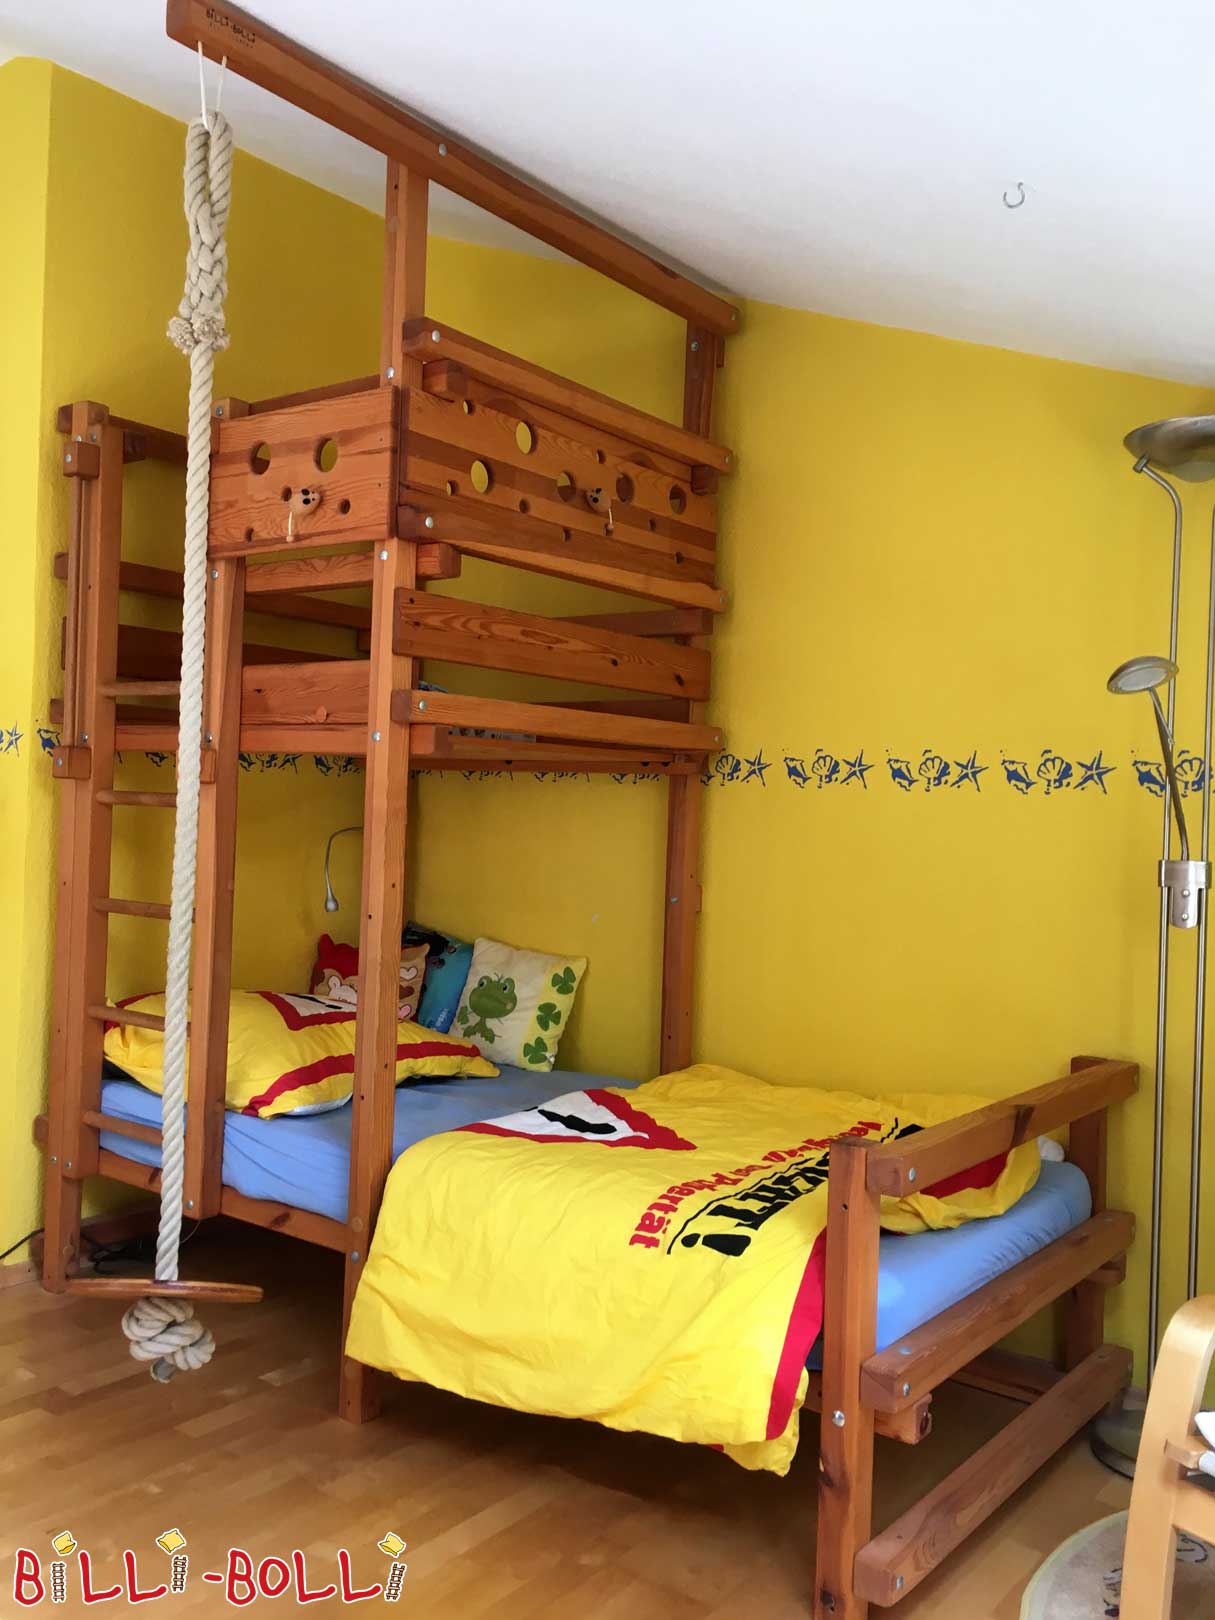 Επικλινές κρεβάτι οροφής, 90 x 200 cm, λαδωμένο πεύκο στο χρώμα του μελιού (Κατηγορία: Χρησιμοποιείται κεκλιμένο κρεβάτι οροφής)